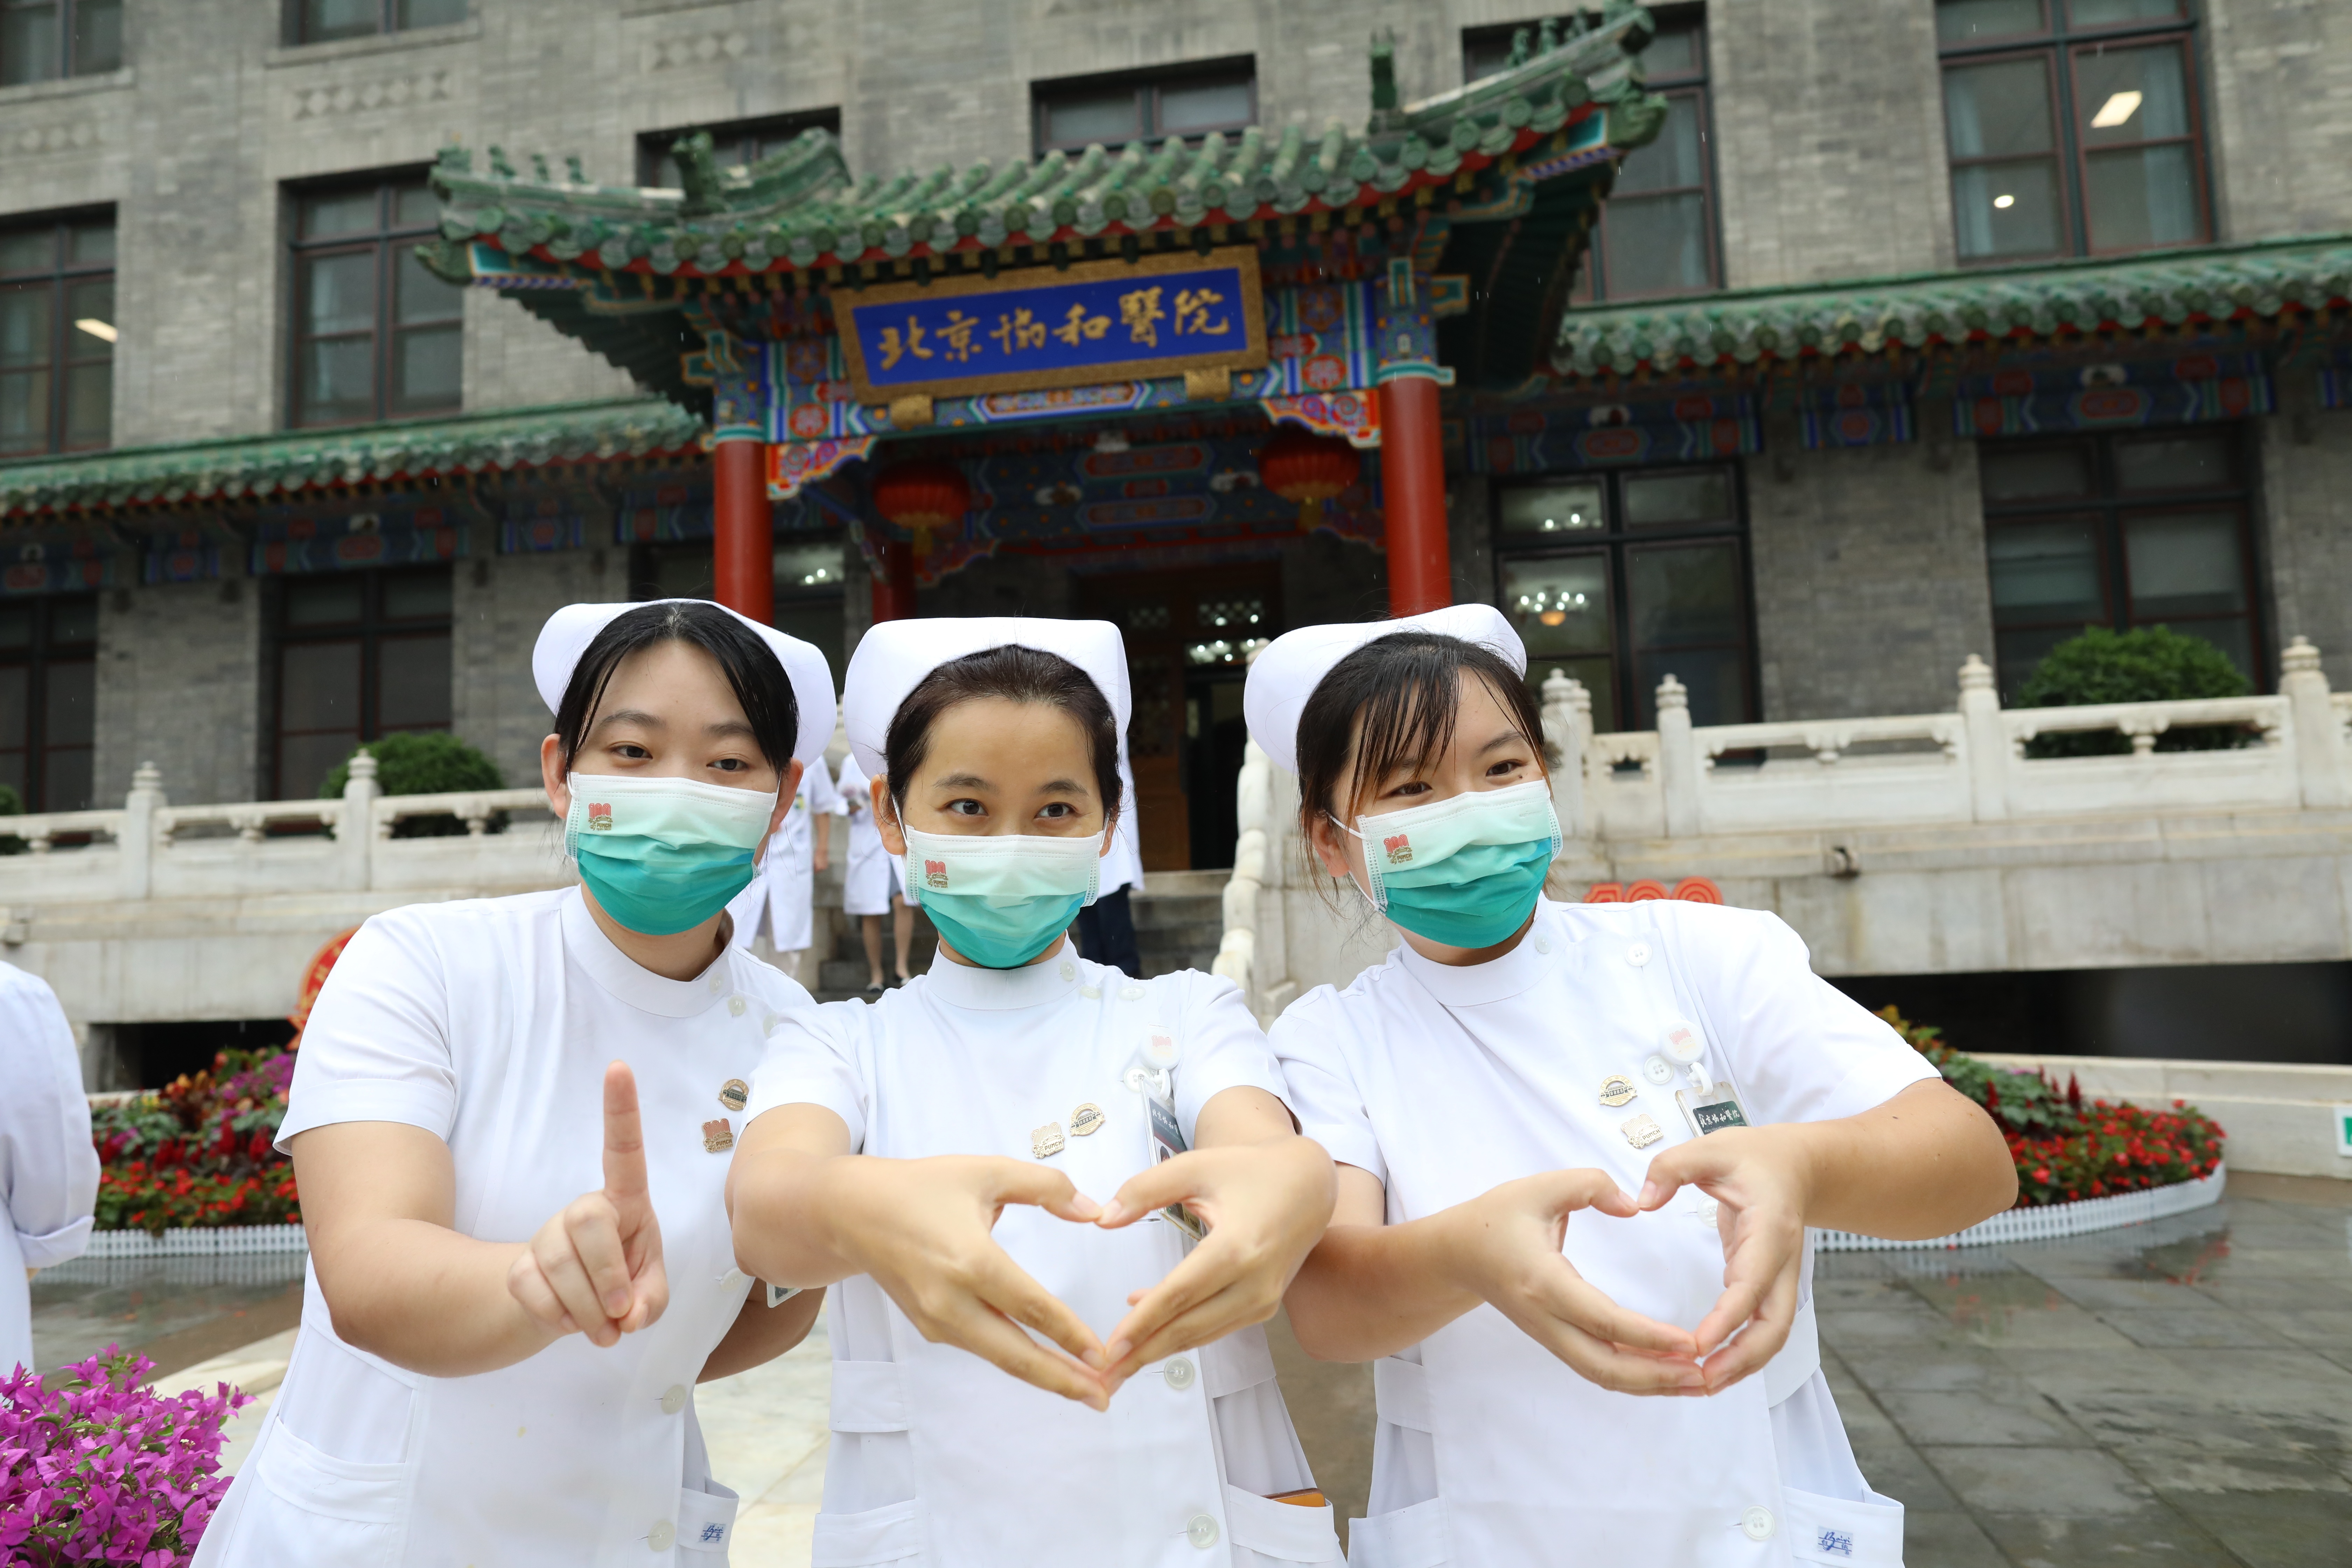 9月16日,在北京协和医院,护士摆出100造型合影